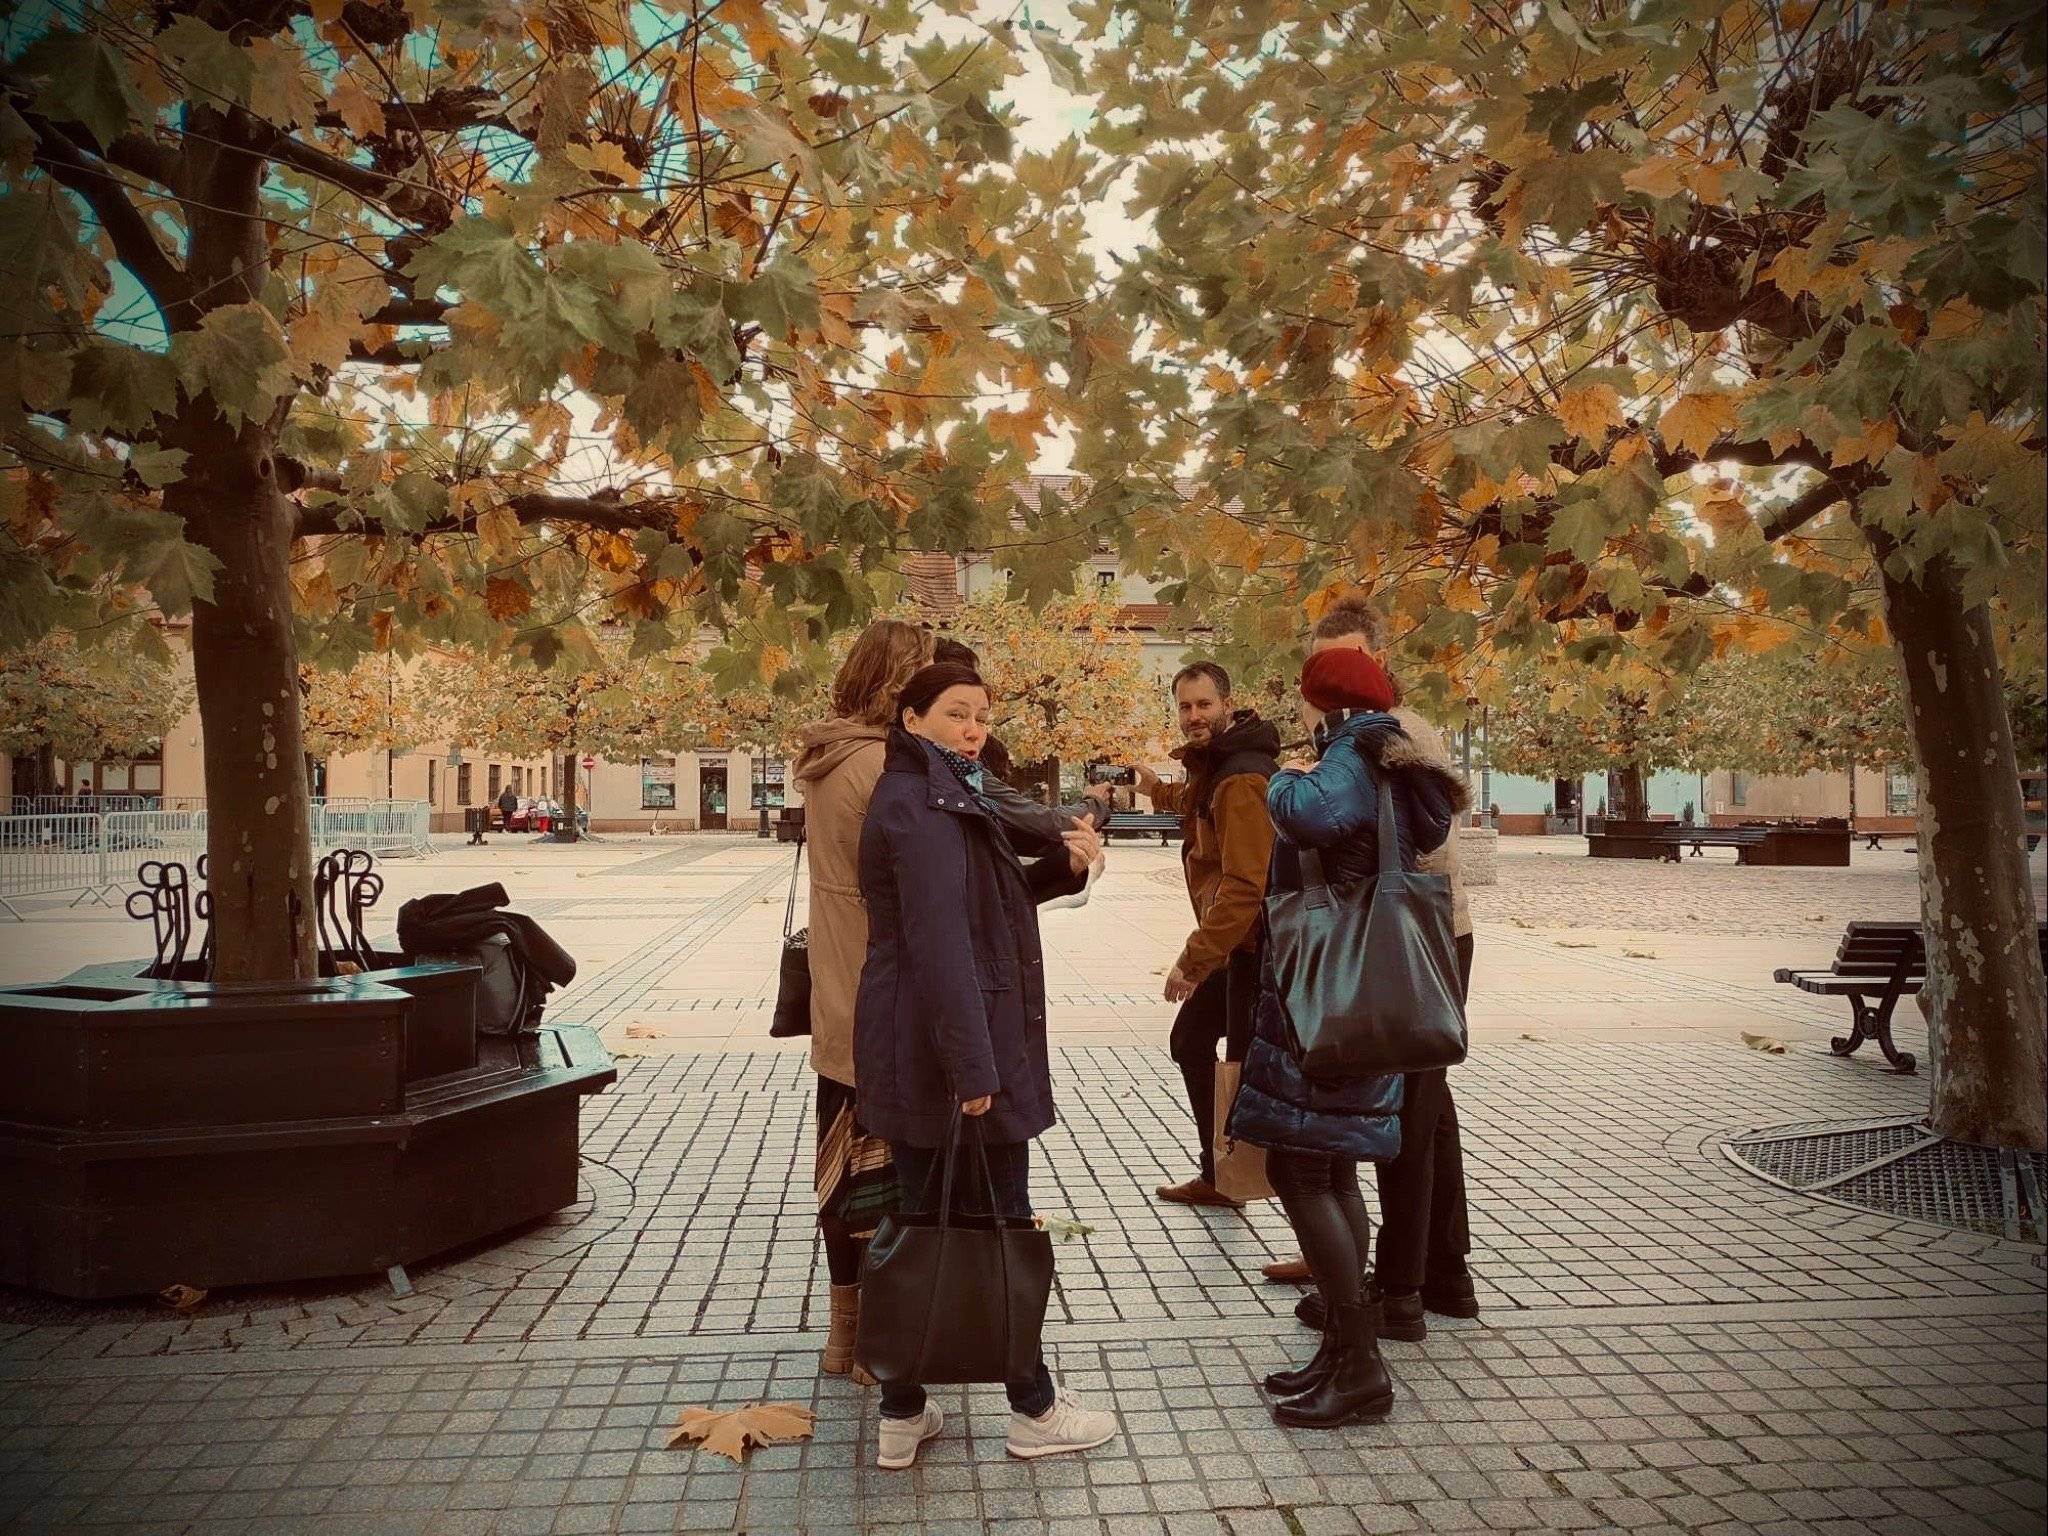 Grupa ludzi na placu pod drzewami